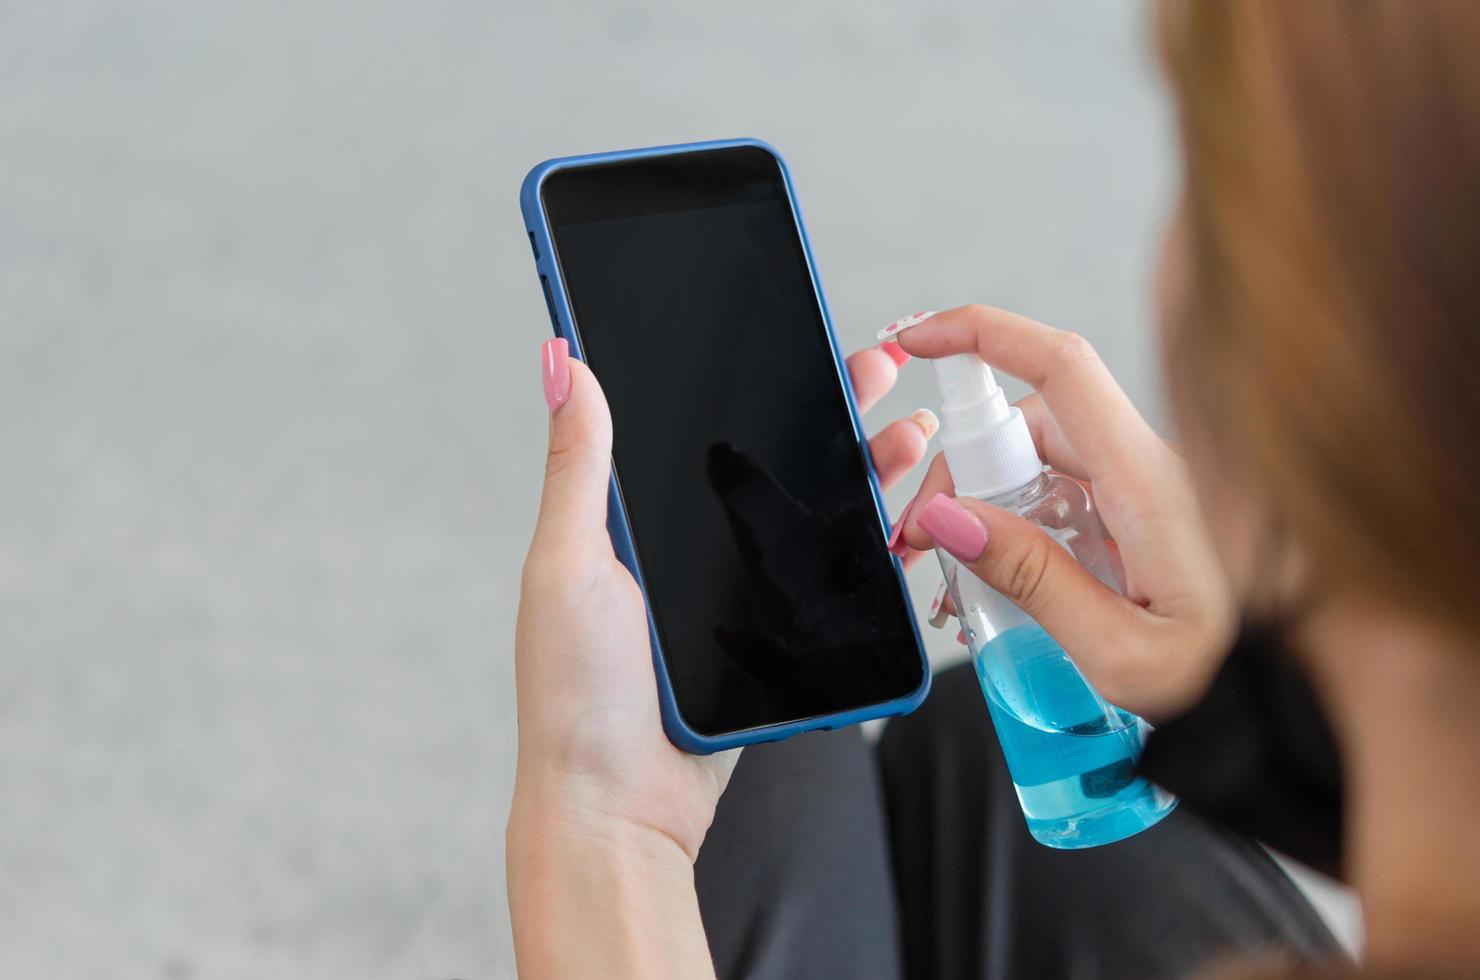 torka och desinficera din mobiltelefon med alkohol. begreppet hälso- och sjukvård för att förebygga sjukdom. kvinna som håller smart telefon. foto